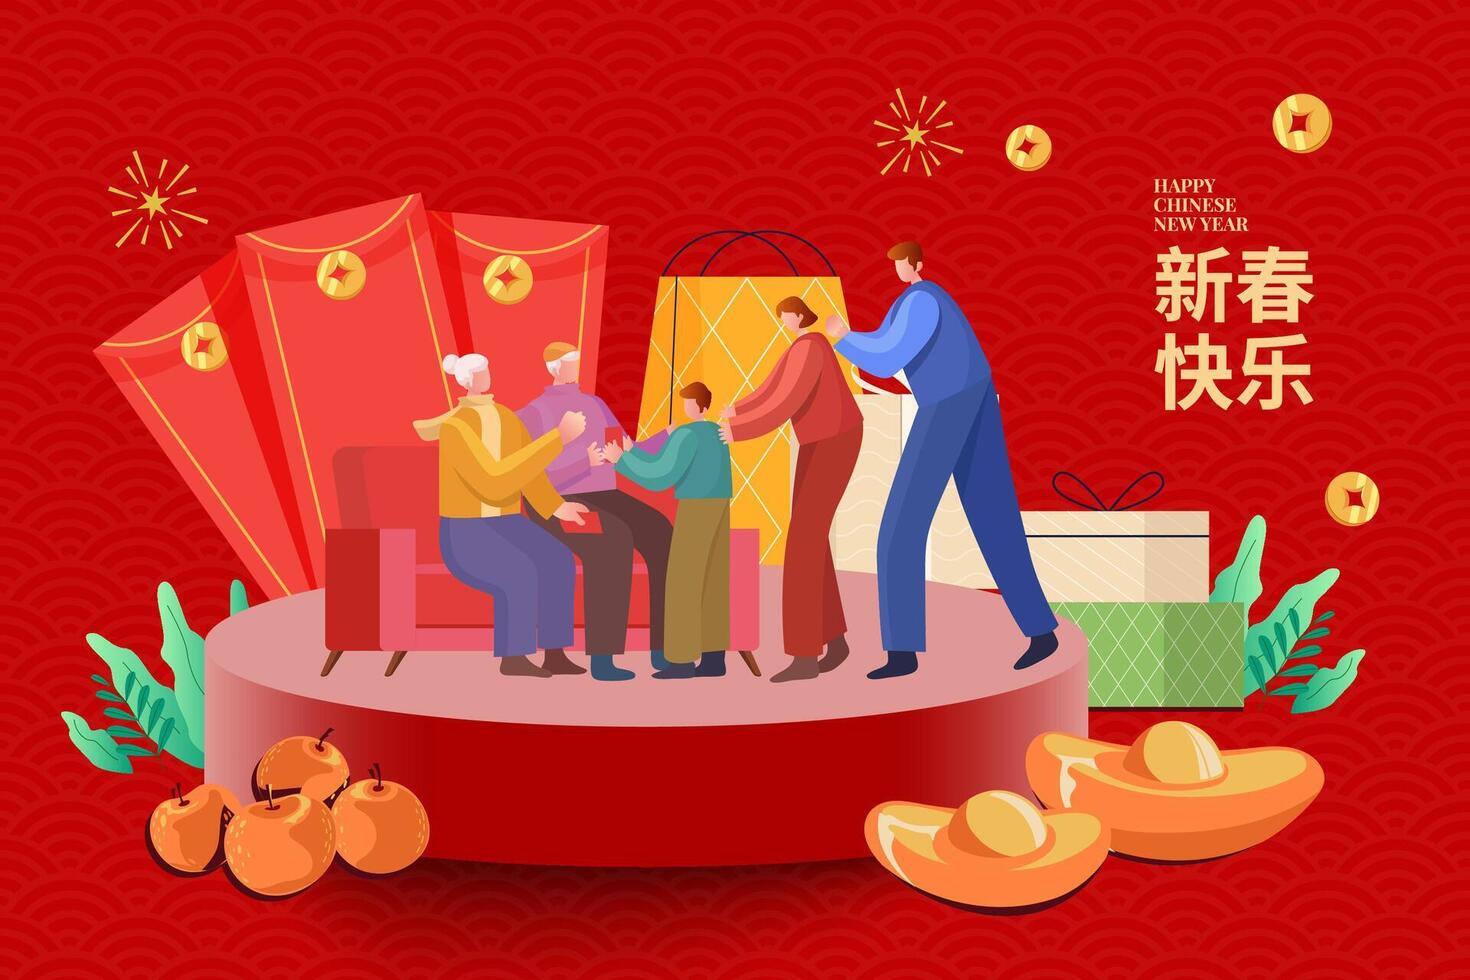 chinois Nouveau année salutation carte. illustration de grands-parents donnant enfant chanceux argent avec grand rouge enveloppes de côté. Traduction Nouveau année bonheur vecteur